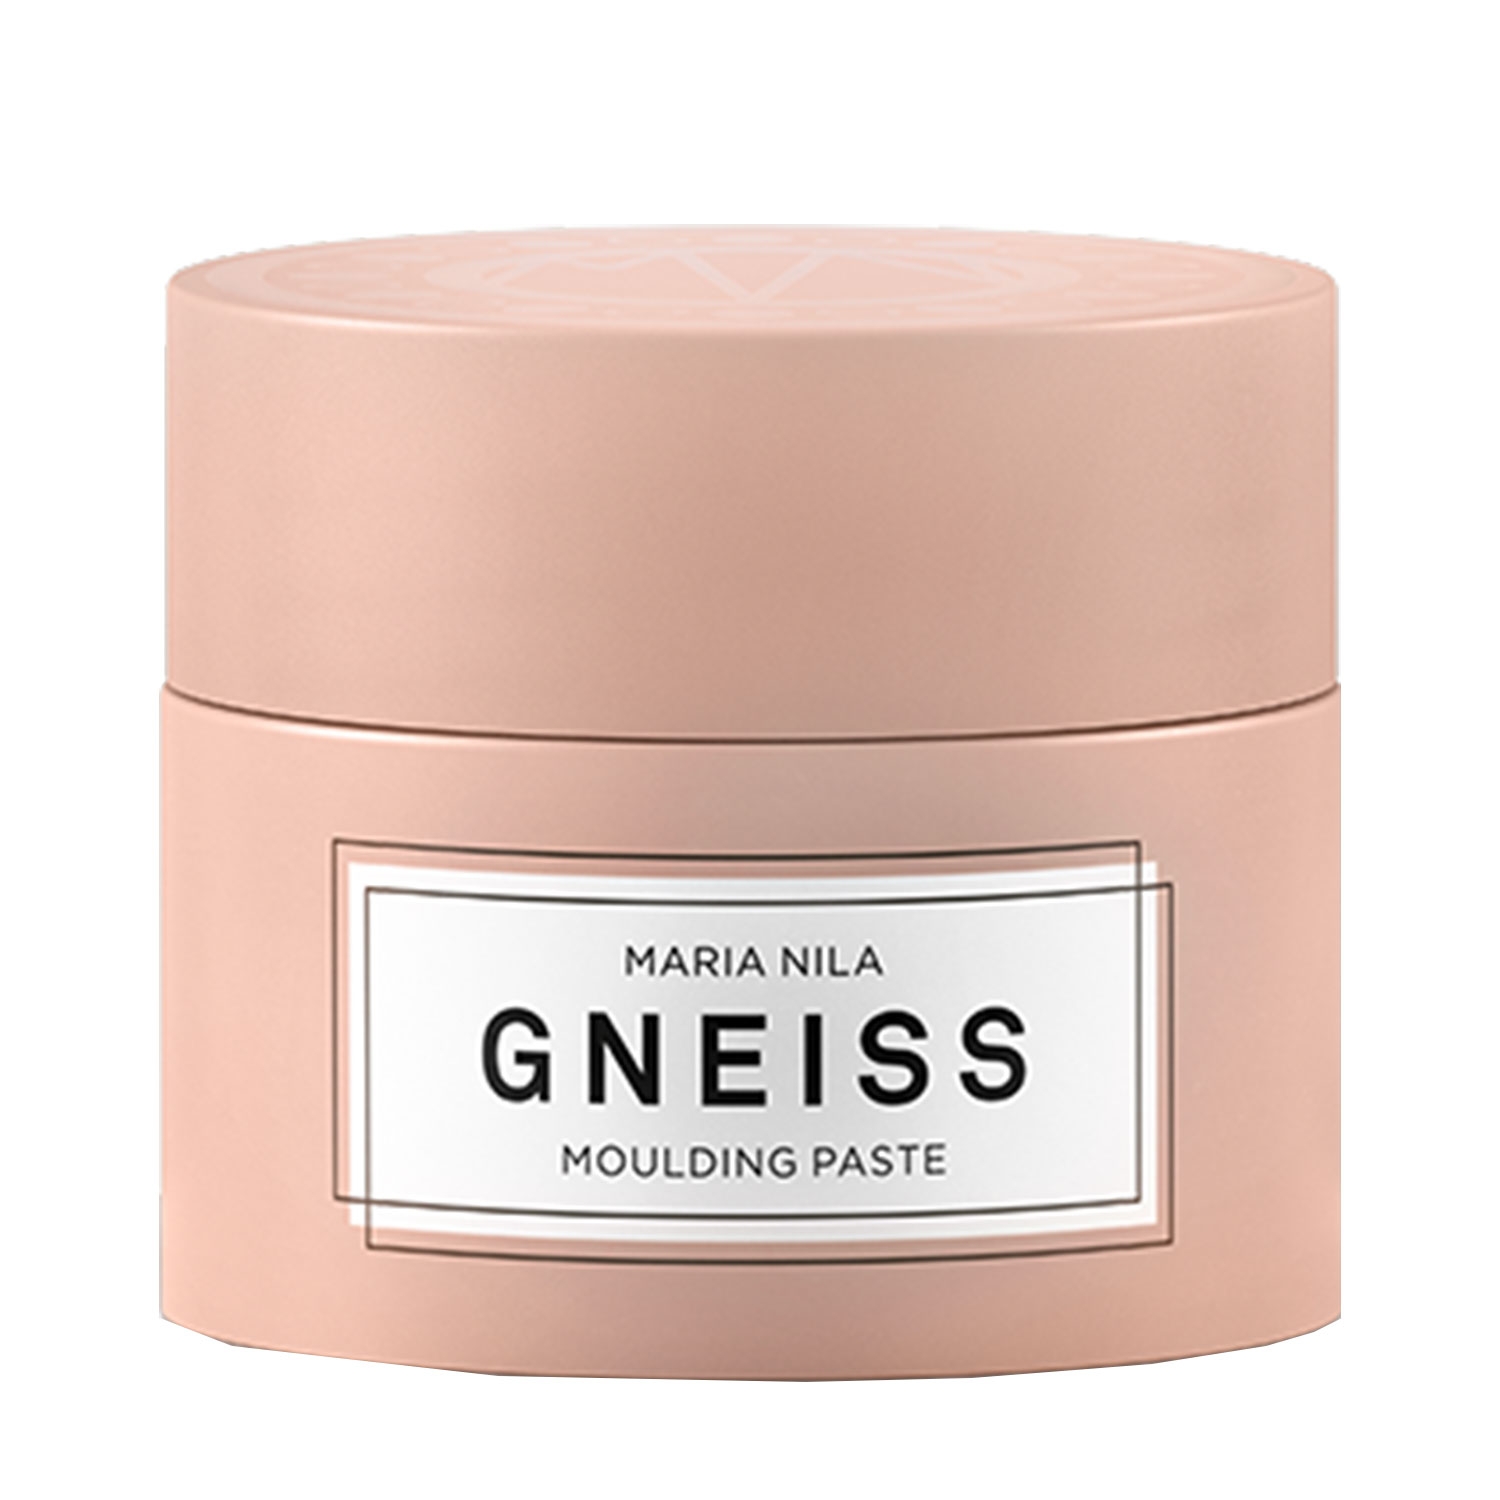 Produktbild von Minerals - Gneiss Moulding Paste